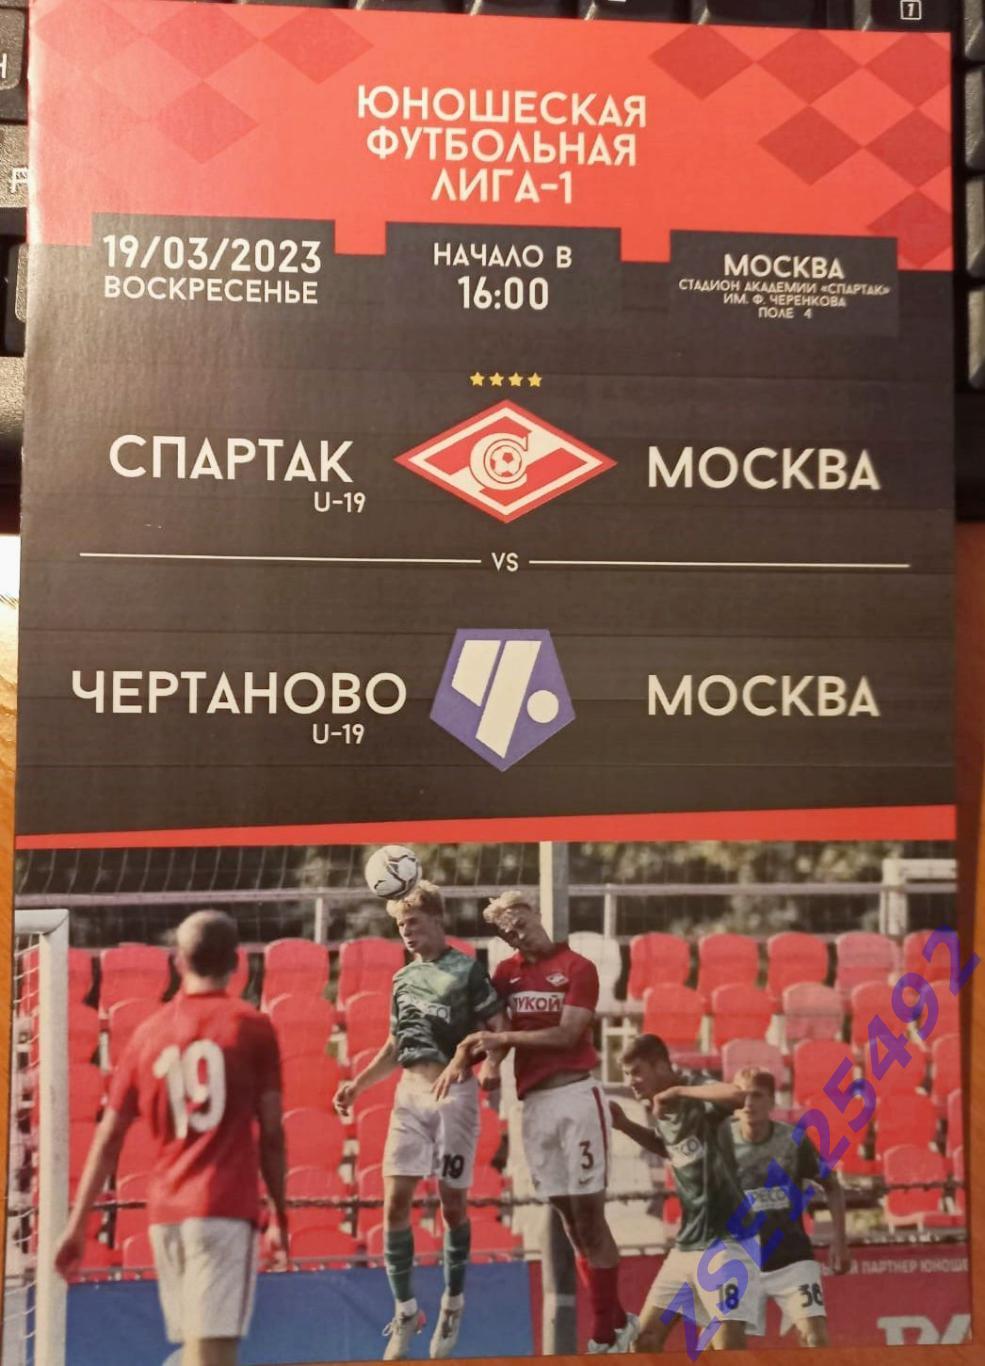 Спартак U-19 (Москва) - Чертаново U-19 (Москва) 19.03.2023